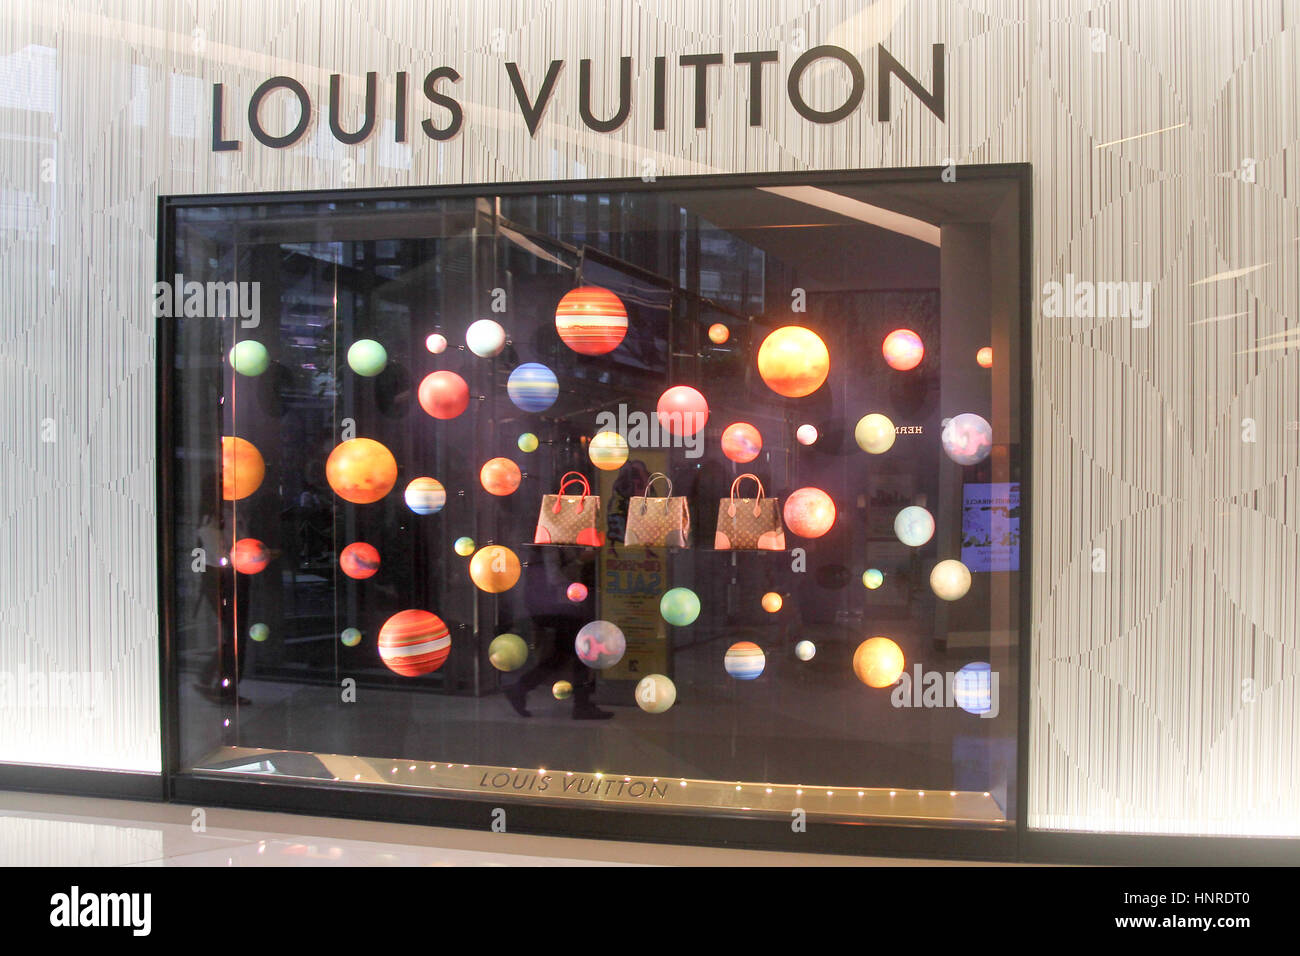 Louis Vuitton French Fashion Bangkok City Thai Thailand Stock Photo - Alamy